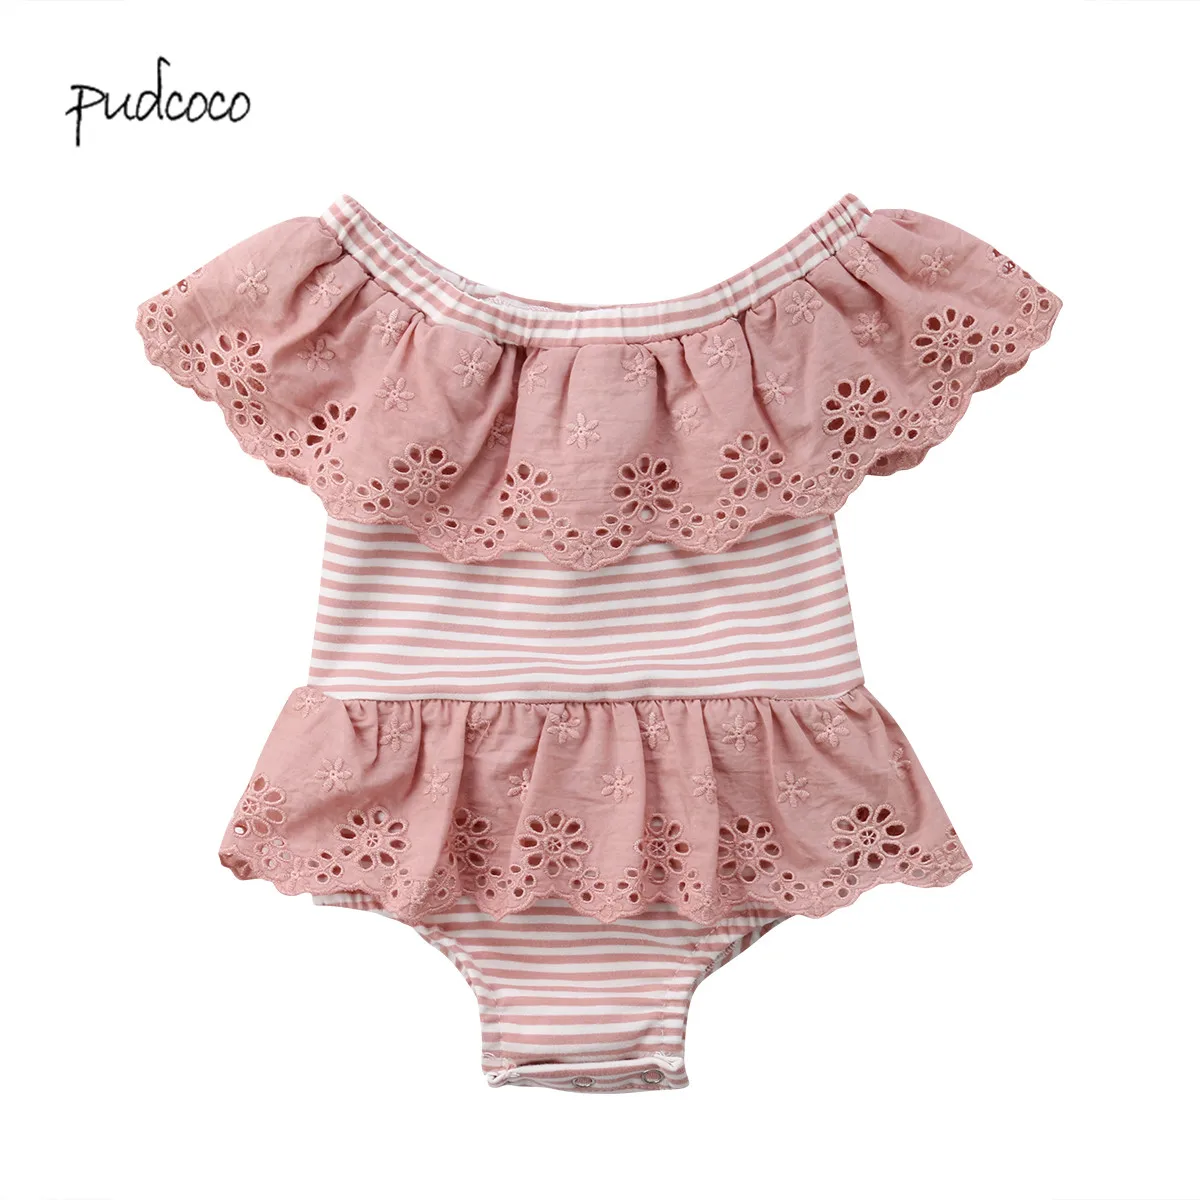 Pudcoco бренд для новорожденных, младенцев для маленьких девочек летние однотонные Junpsuit боди наряды 0-24 M